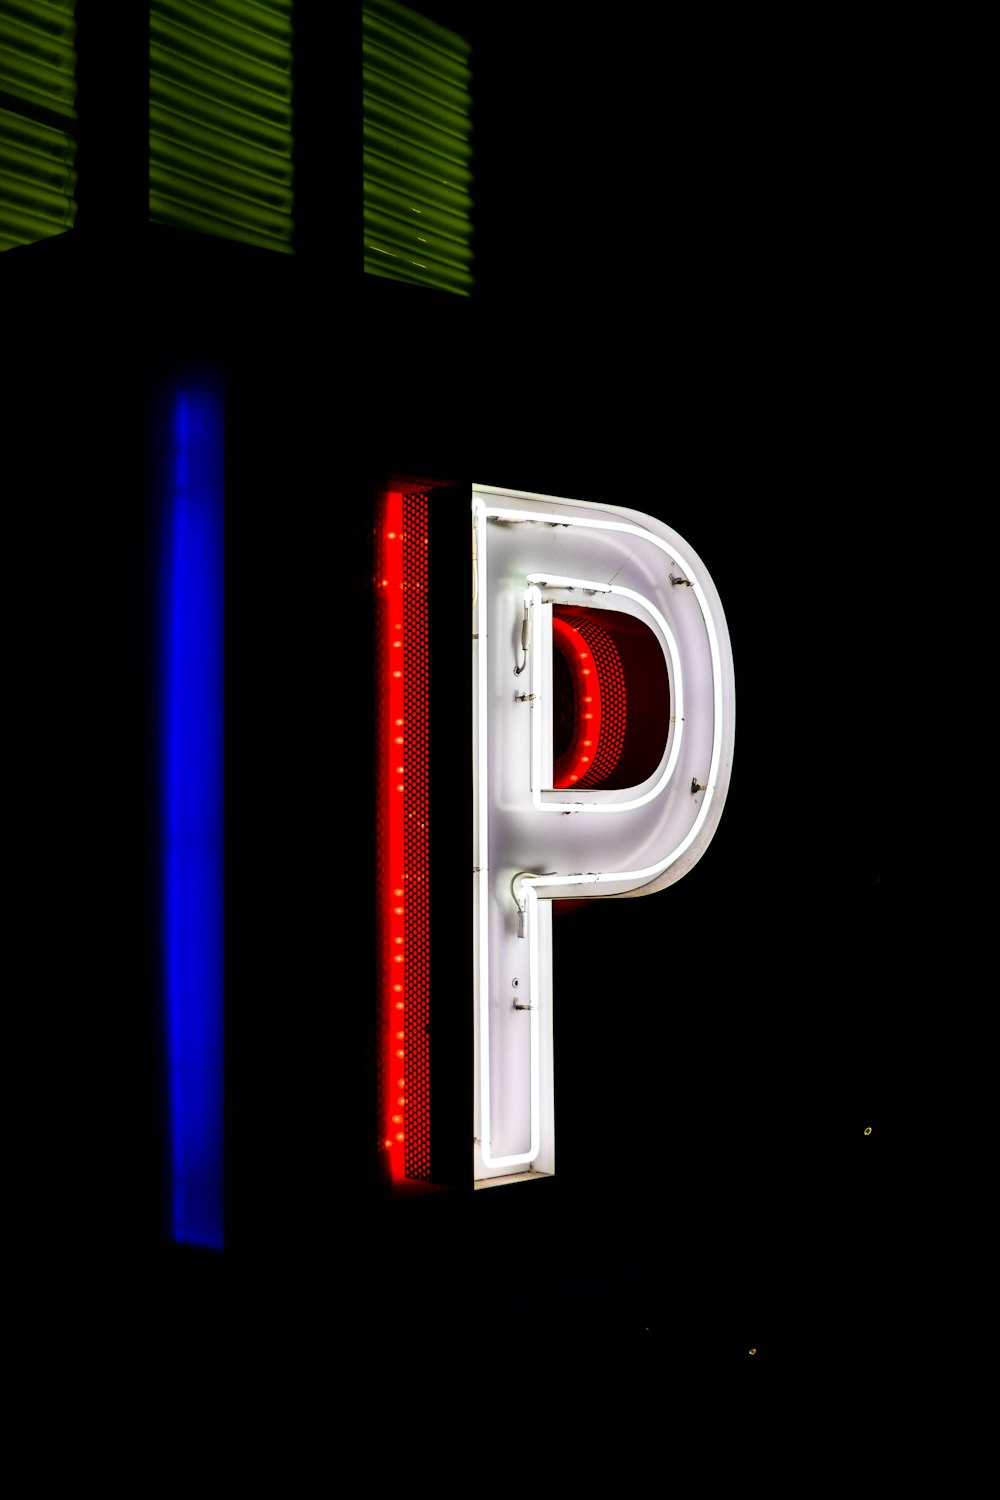 P neon signage